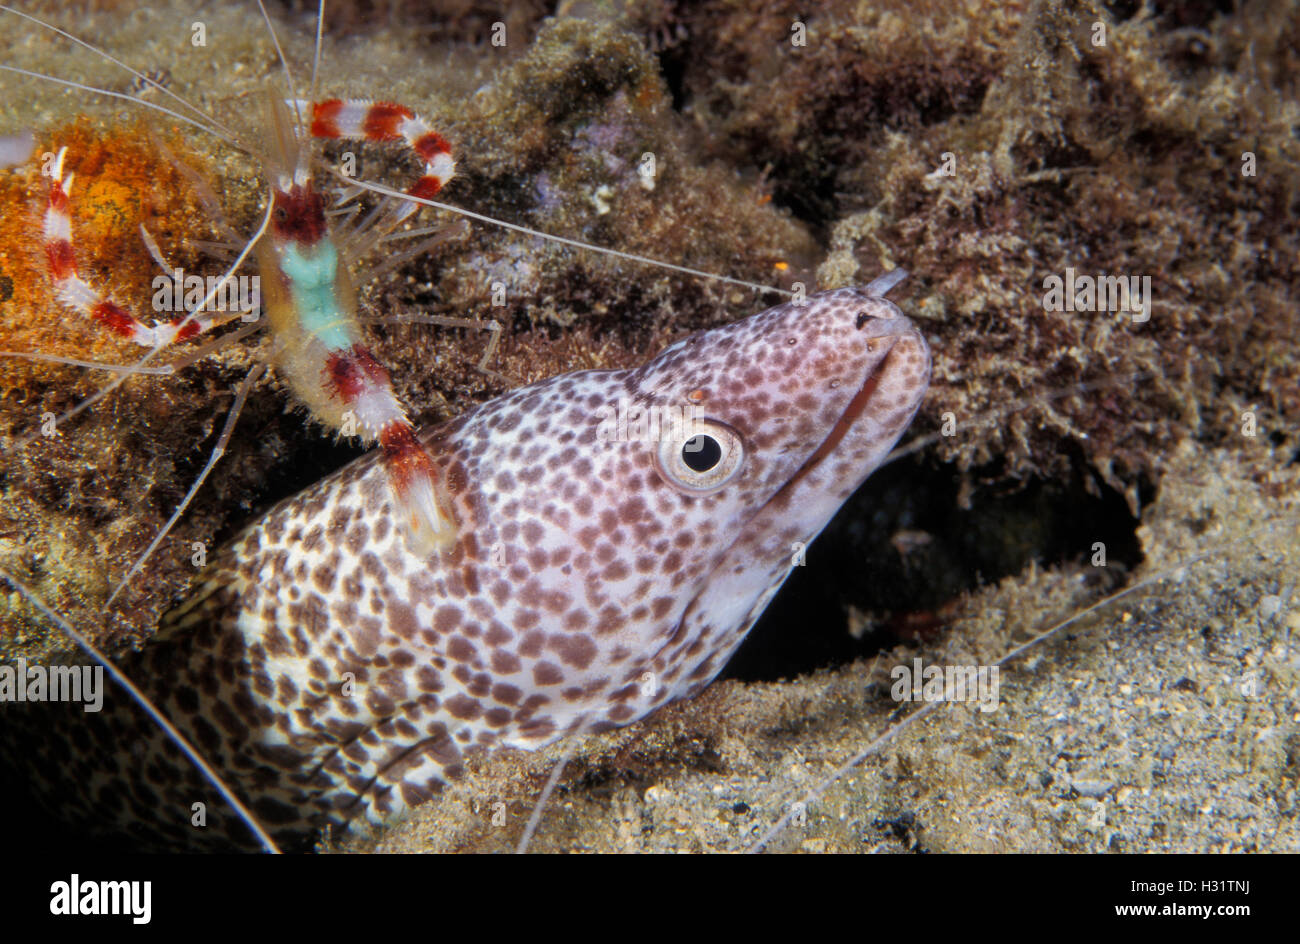 Banded Coral Garnelen (Stenopus Hispidus), Putzergarnelen, kümmert sich um ein Spotted Muräne (Gymnothorax Moringa). Karibische Meer. Stockfoto